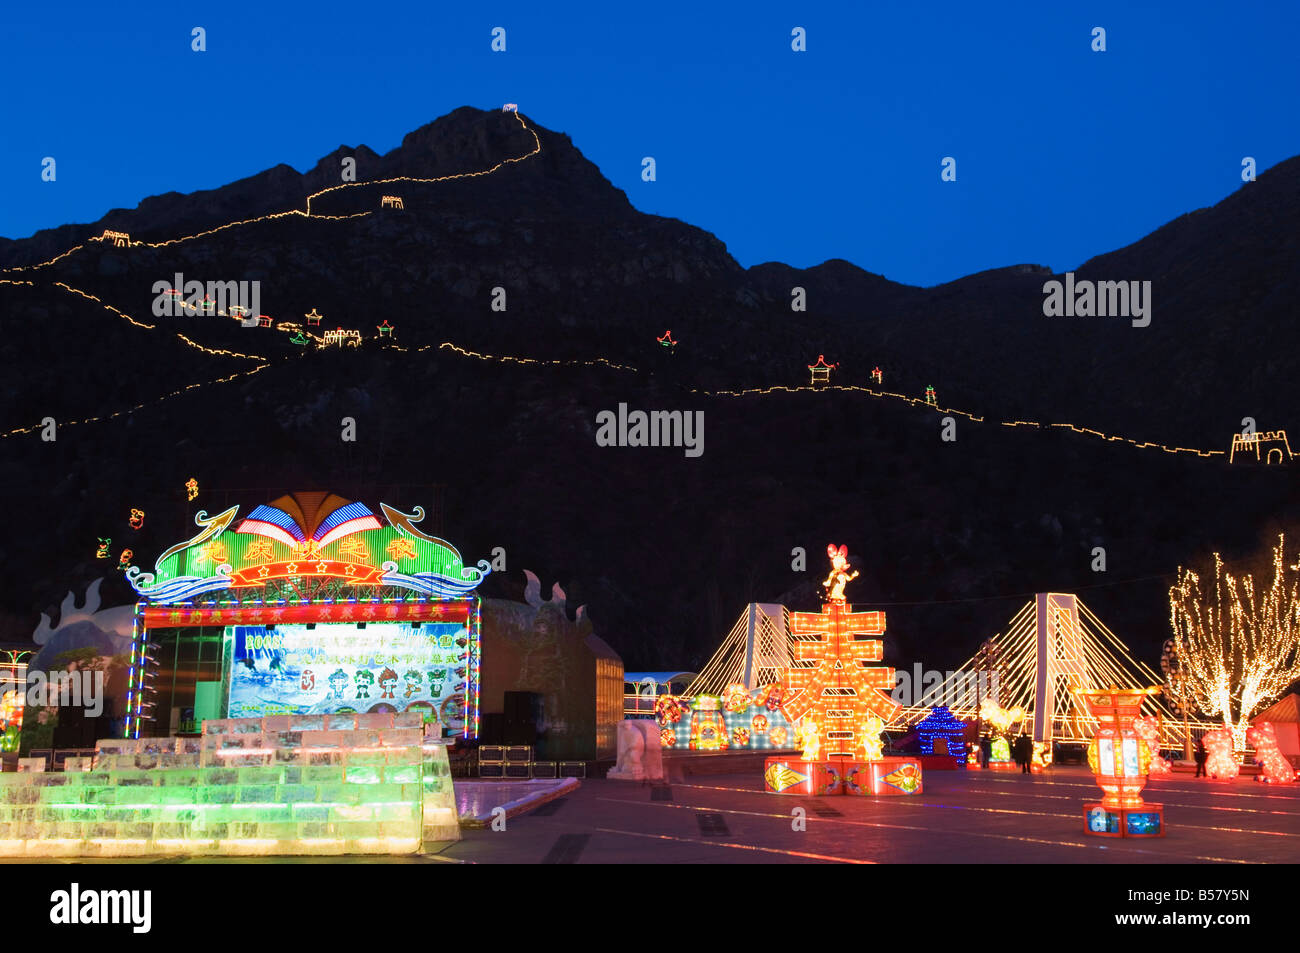 Visualización de noche iluminaciones y copia de la Gran Muralla de China en la garganta de Longqing festival de esculturas de hielo, Beijing, China Foto de stock